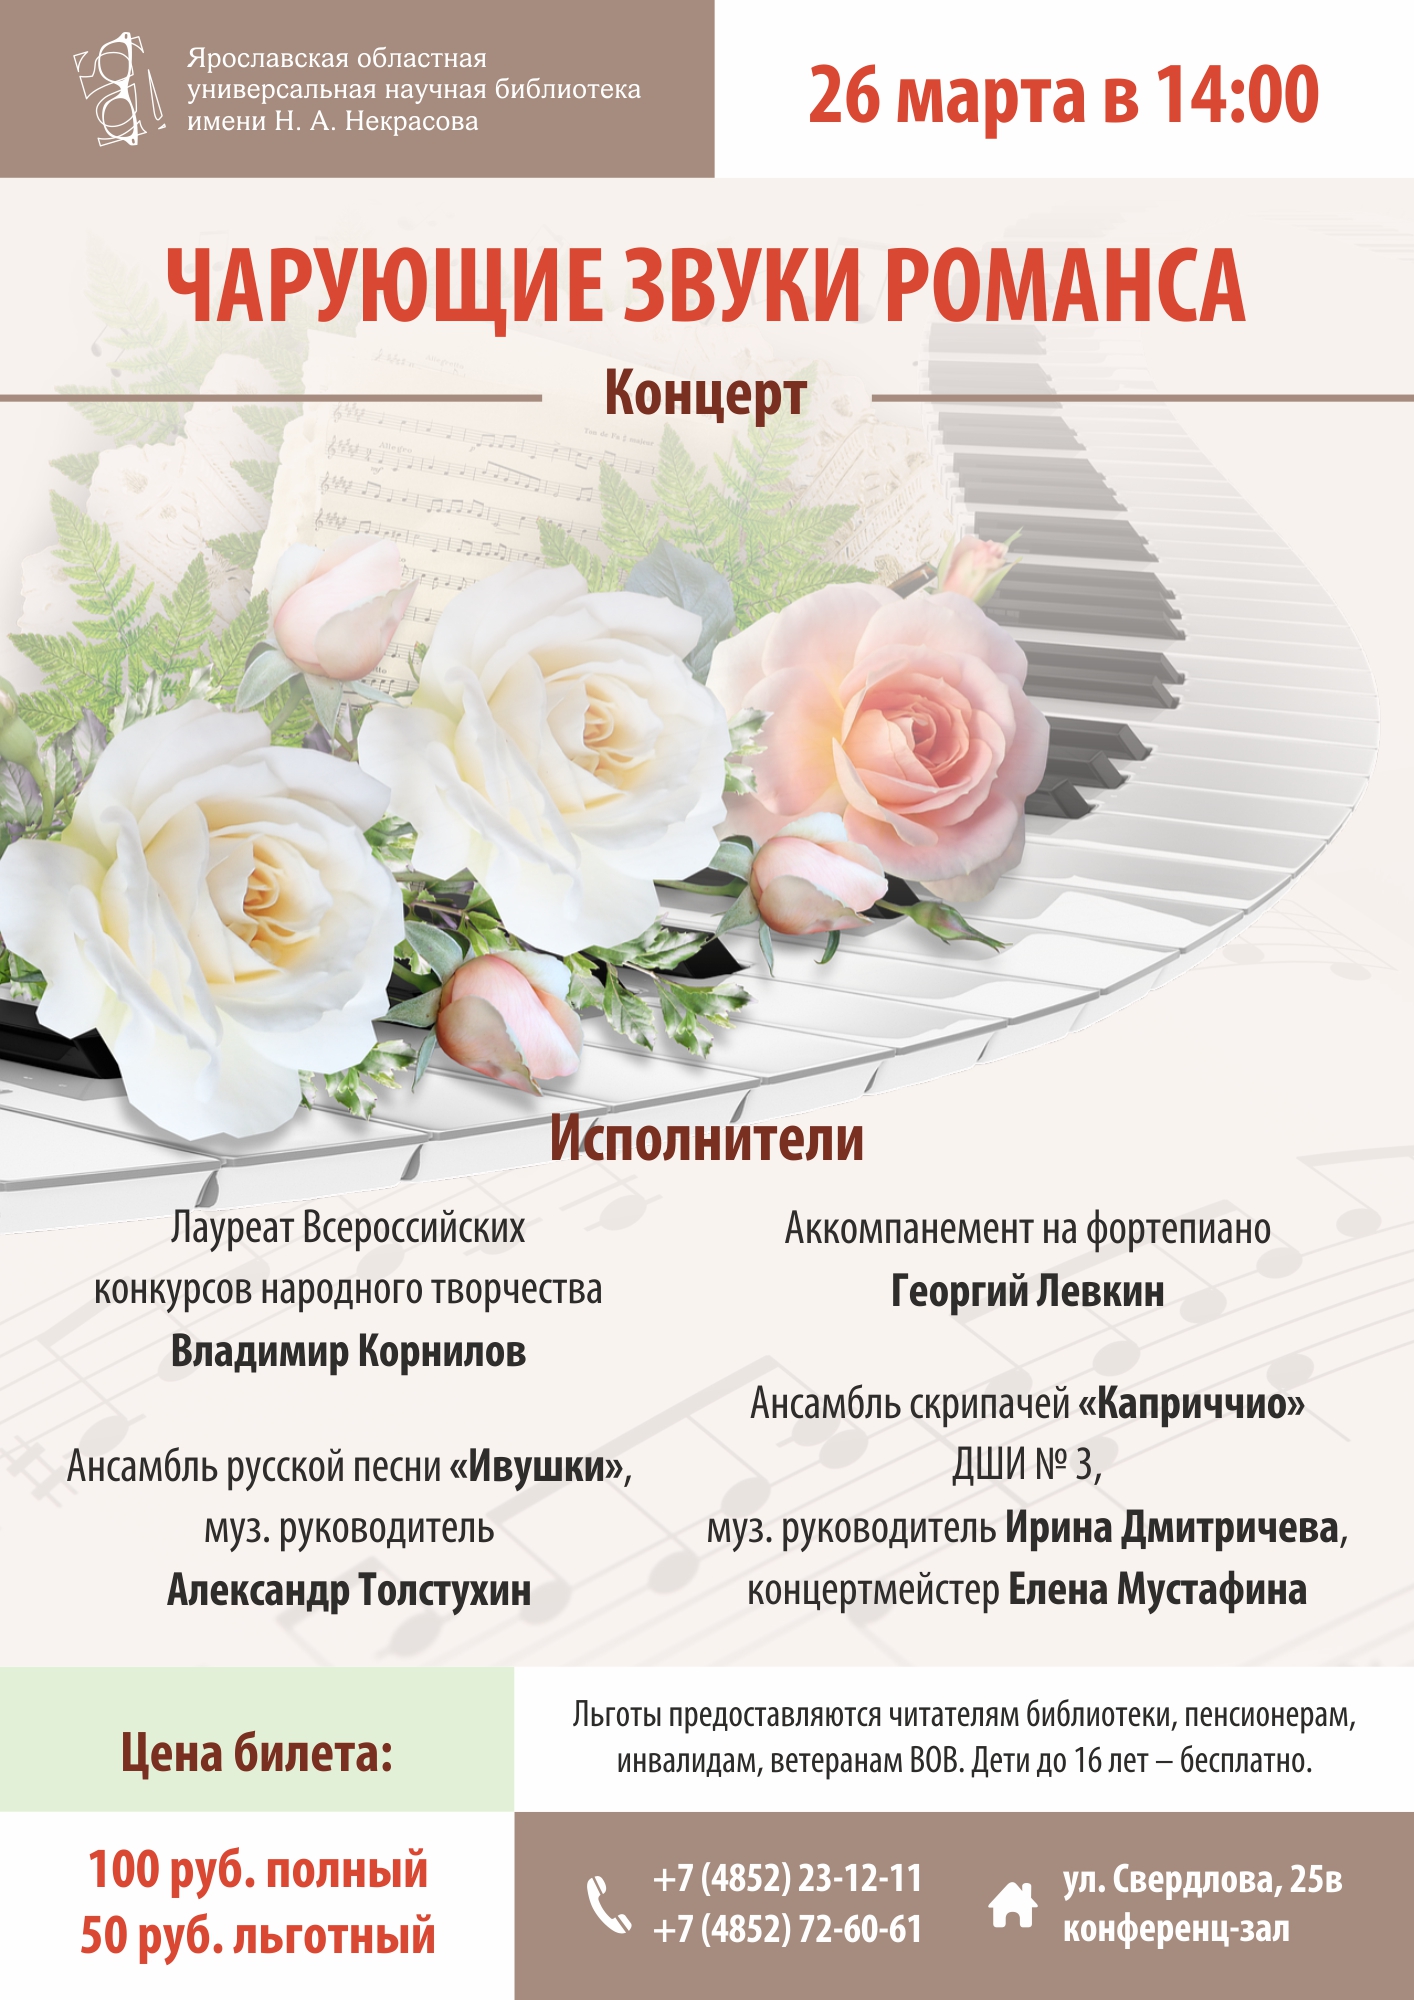 Некрасовская библиотека: приглашаем на концерт «Чарующие звуки романса»